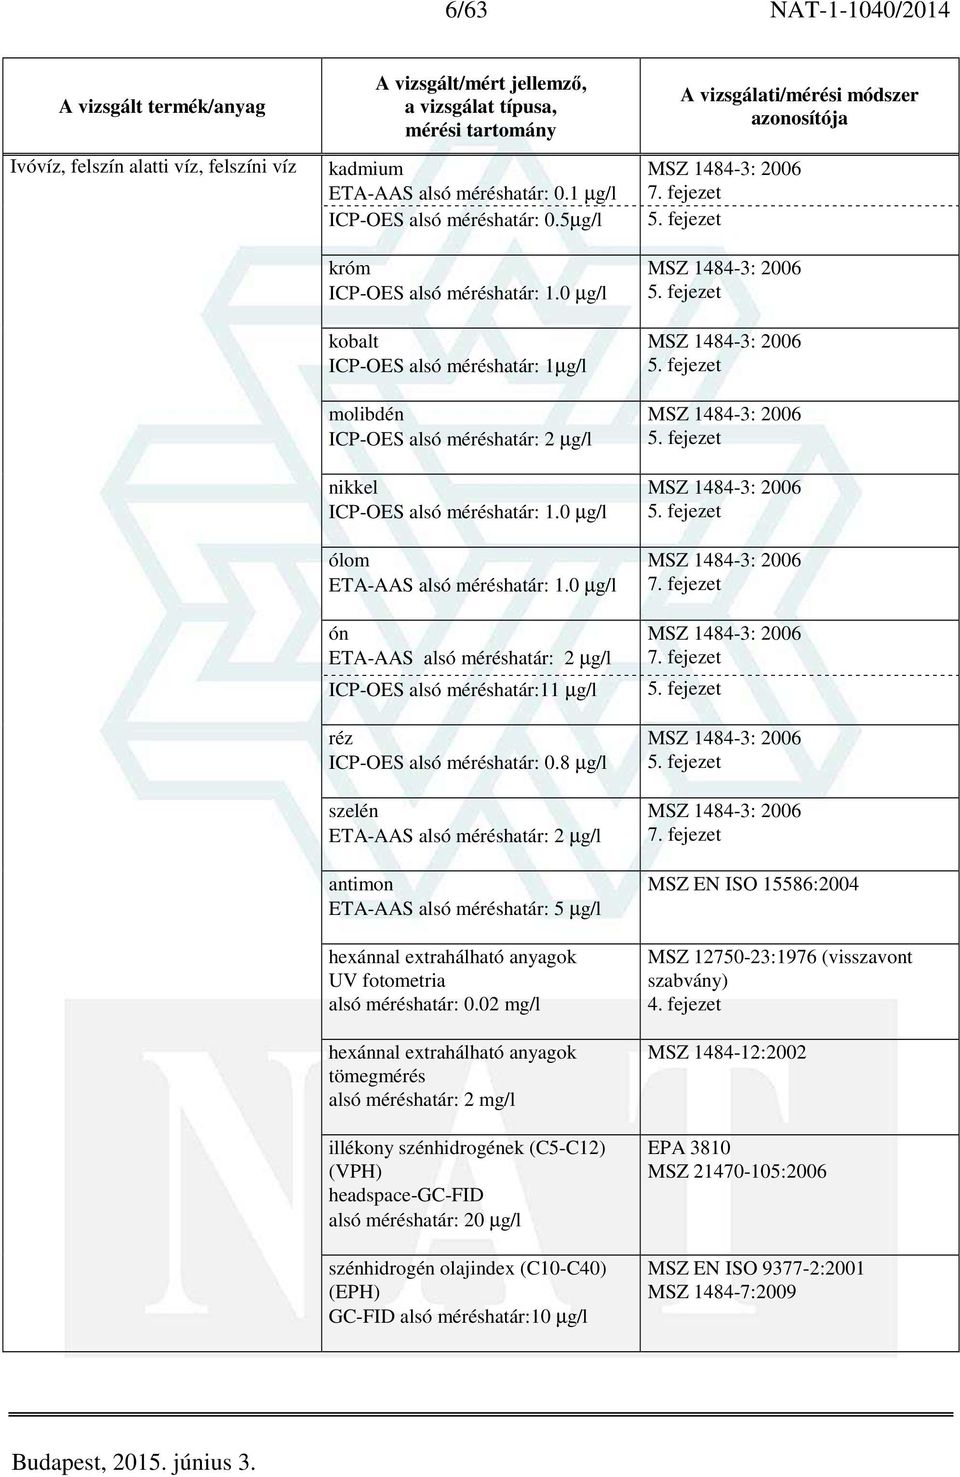 02 mg/l hexánnal extrahálható anyagok tömegmérés 2 mg/l illékony szénhidrogének (C5-C12) (VPH) headspace-gc-fid 20 µg/l szénhidrogén olajindex (C10-C40) (EPH) GC-FID 10 µg/l MSZ 1484-3: 2006 7.